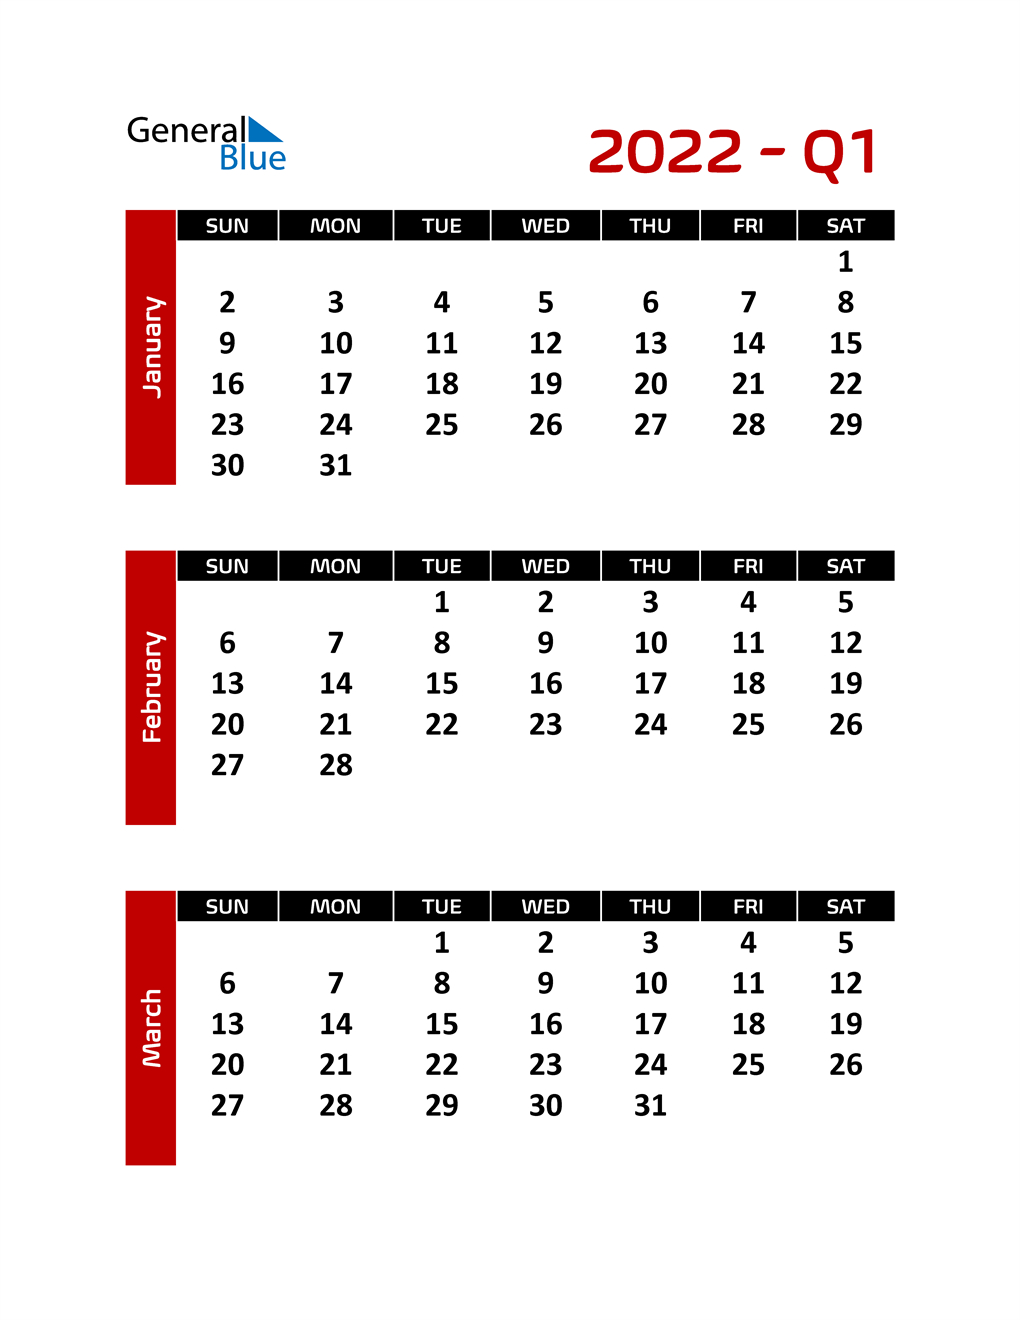 Q1 2022 Calendar - December Calendar 2022